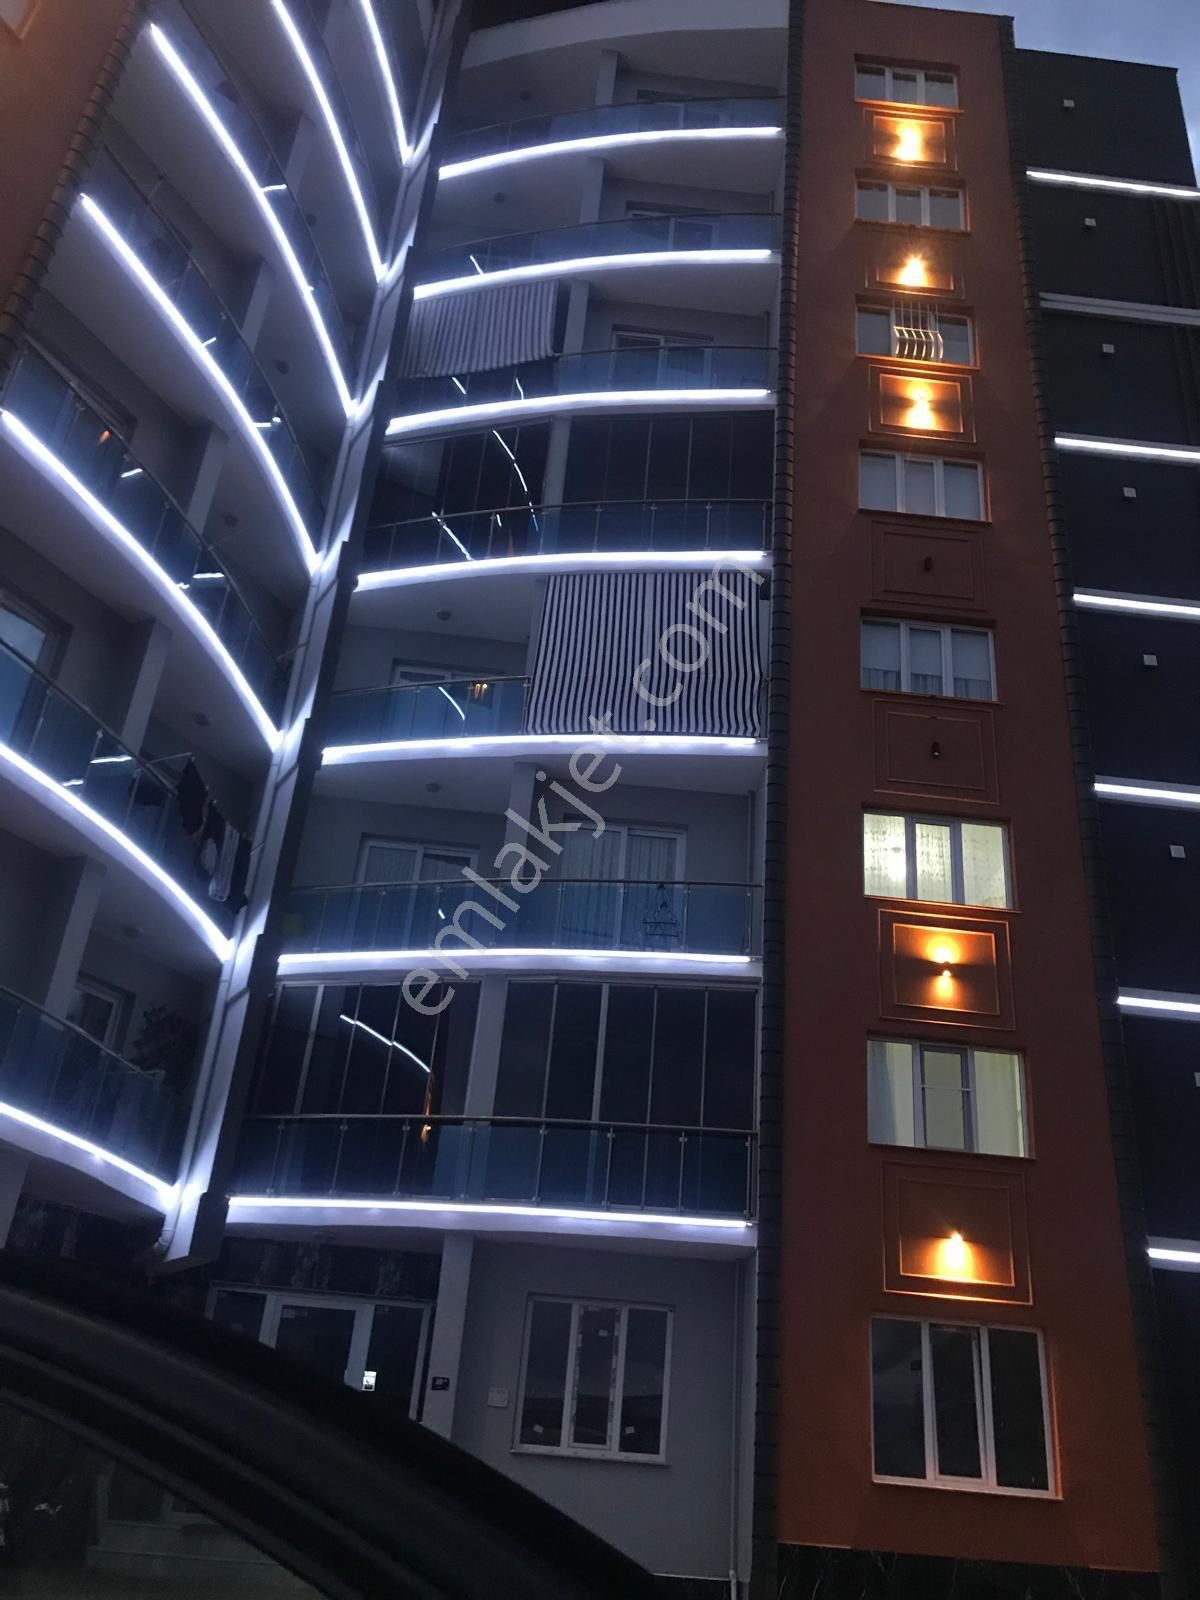 Nazilli Pınarbaşı Satılık Daire Yıldıztepe mahallesinde site içerisinde 7 katlı binanın çatı dubleks dairesi satılık